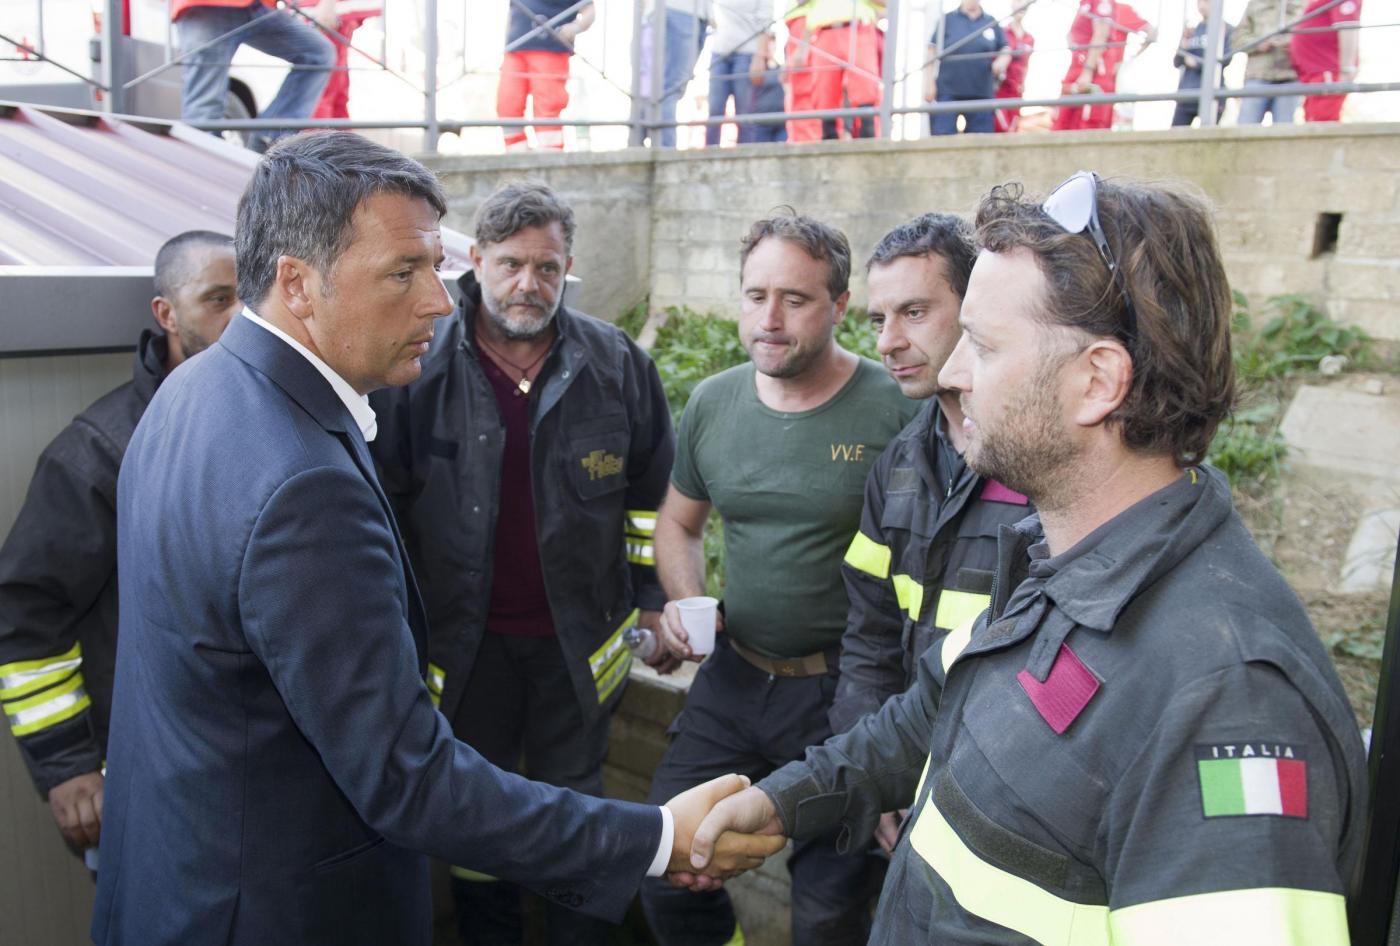 Terremoto in centro Italia: lMatteo Renzi visita le zone colpite dal sisma